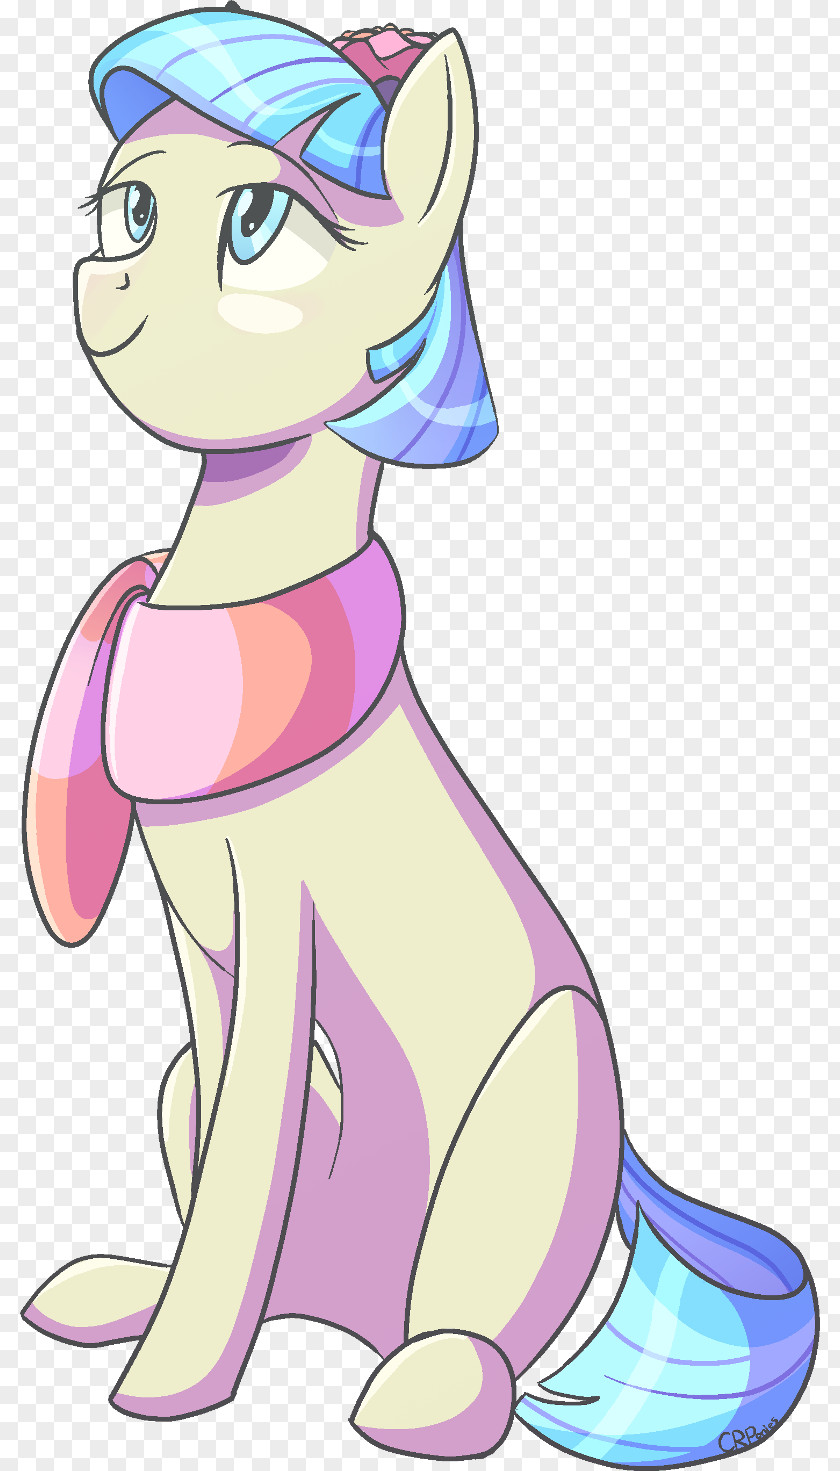 Horse Pony Cat Unicorn Illustration PNG